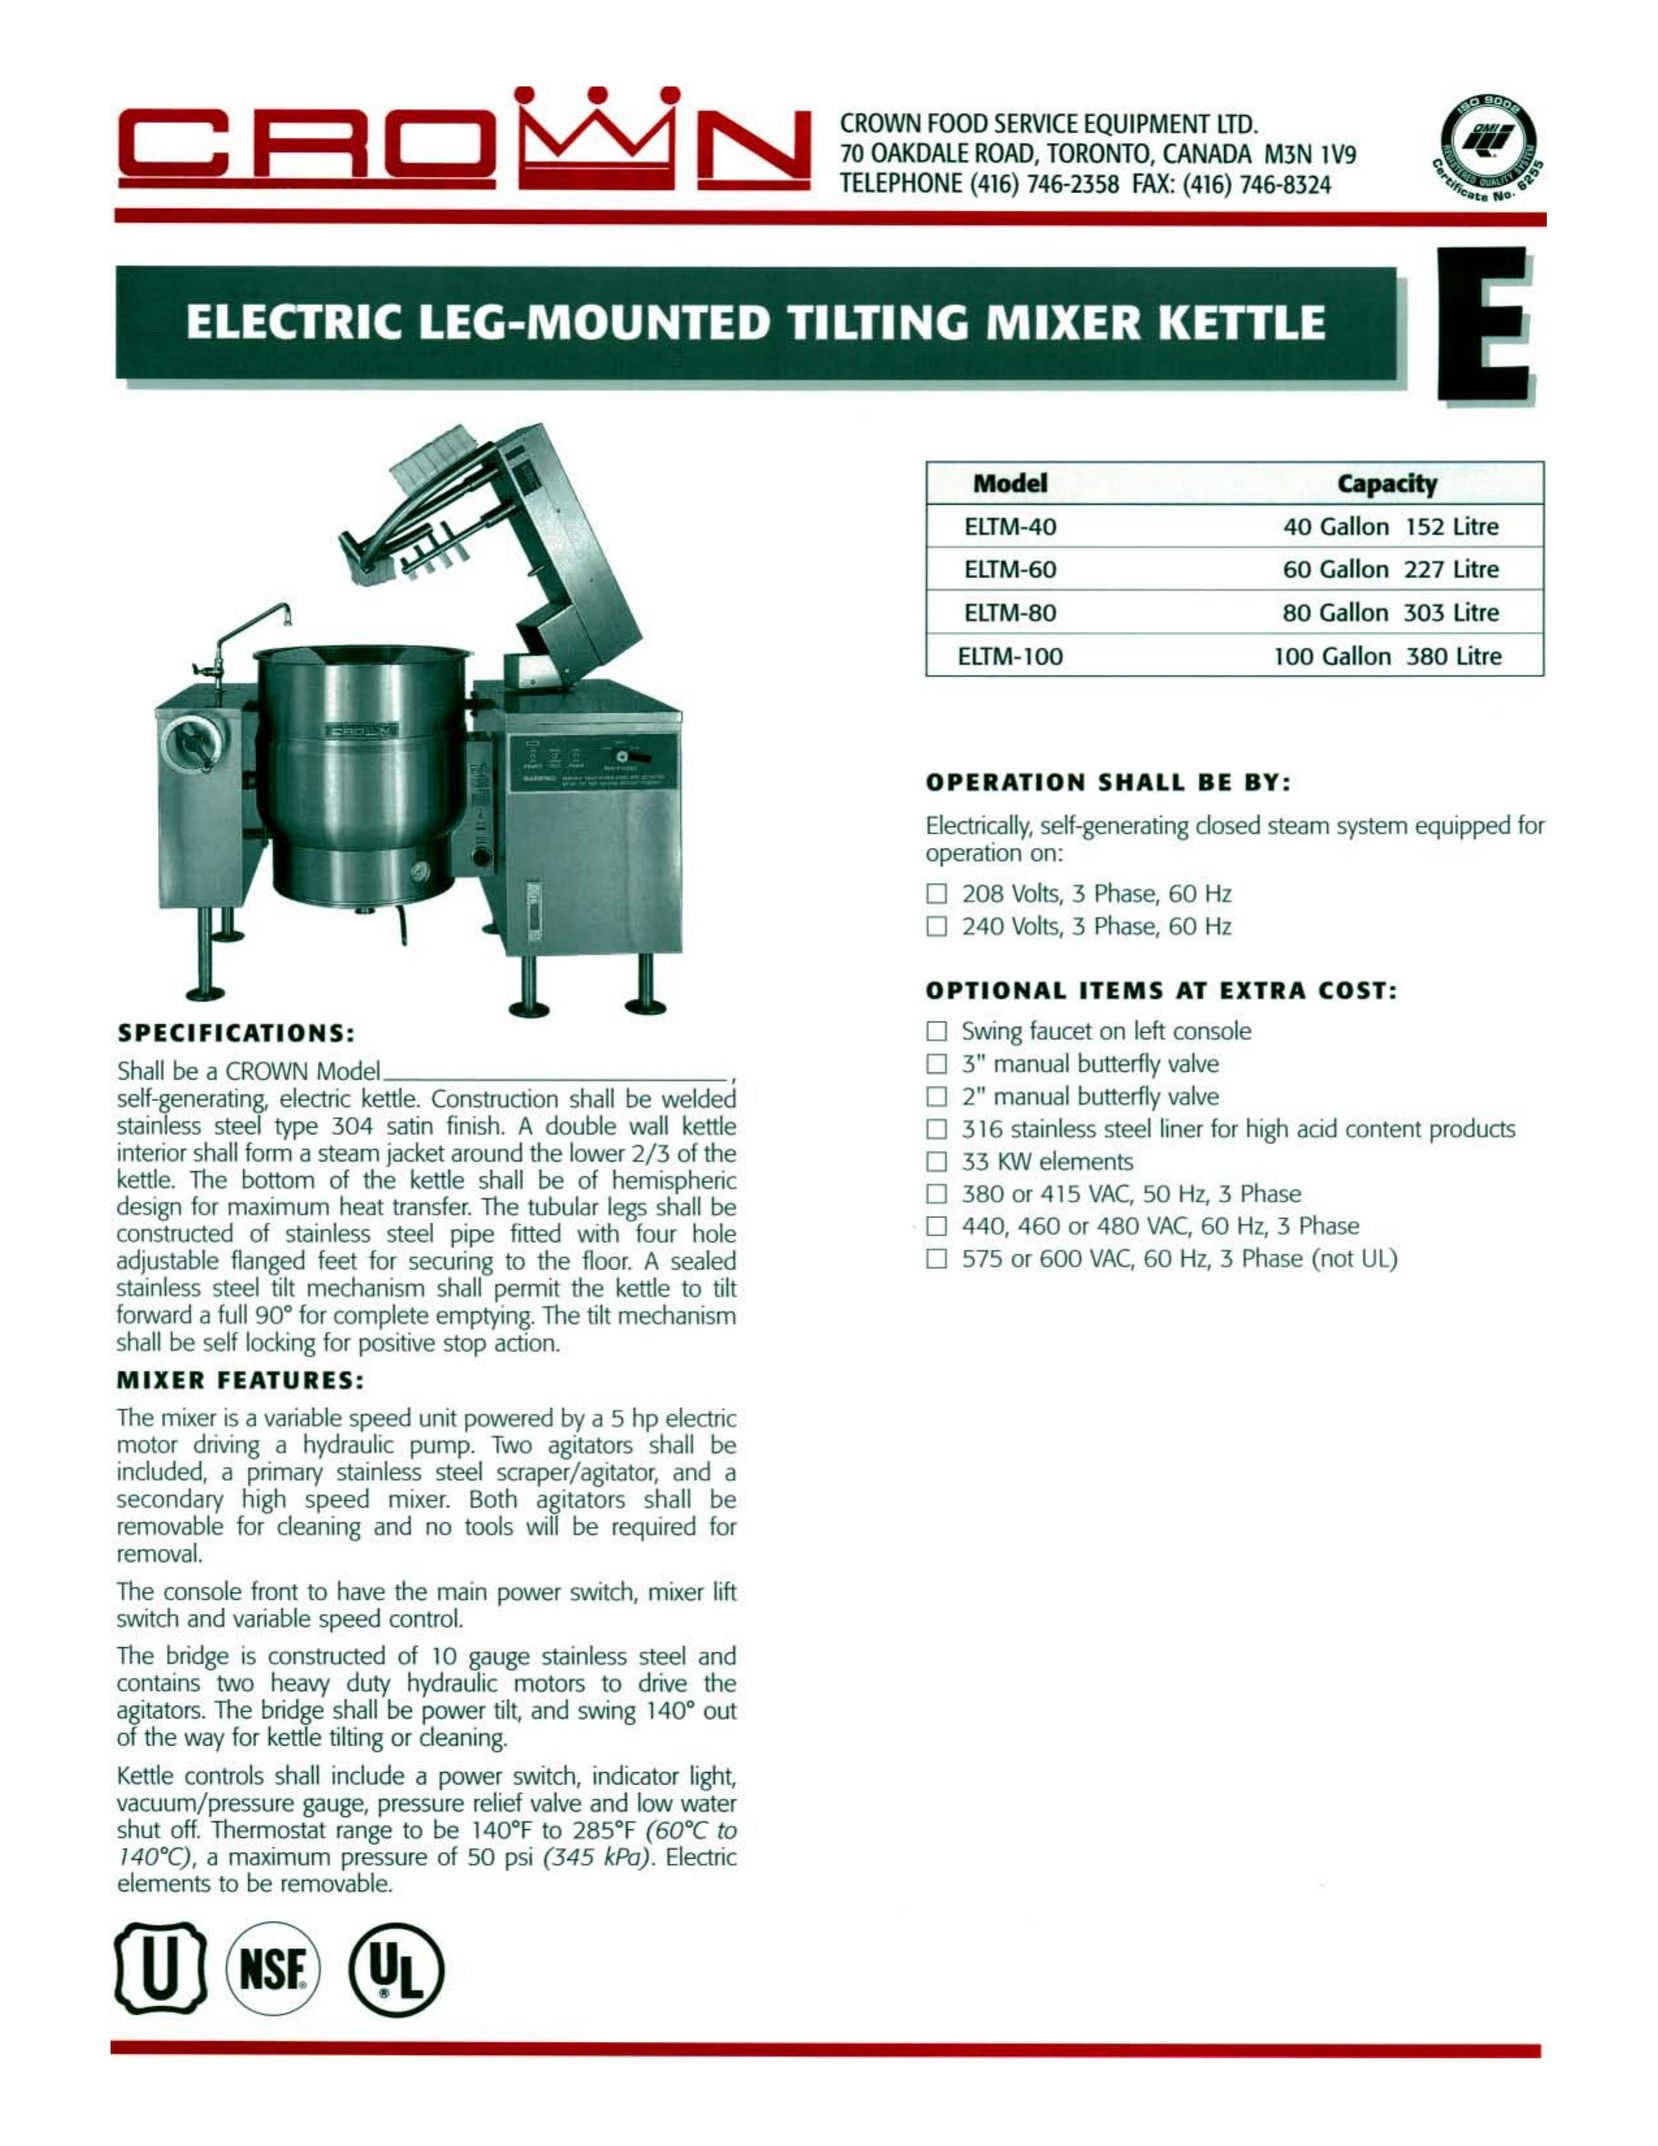 Crown Equipment ELTM-80 Hot Beverage Maker User Manual